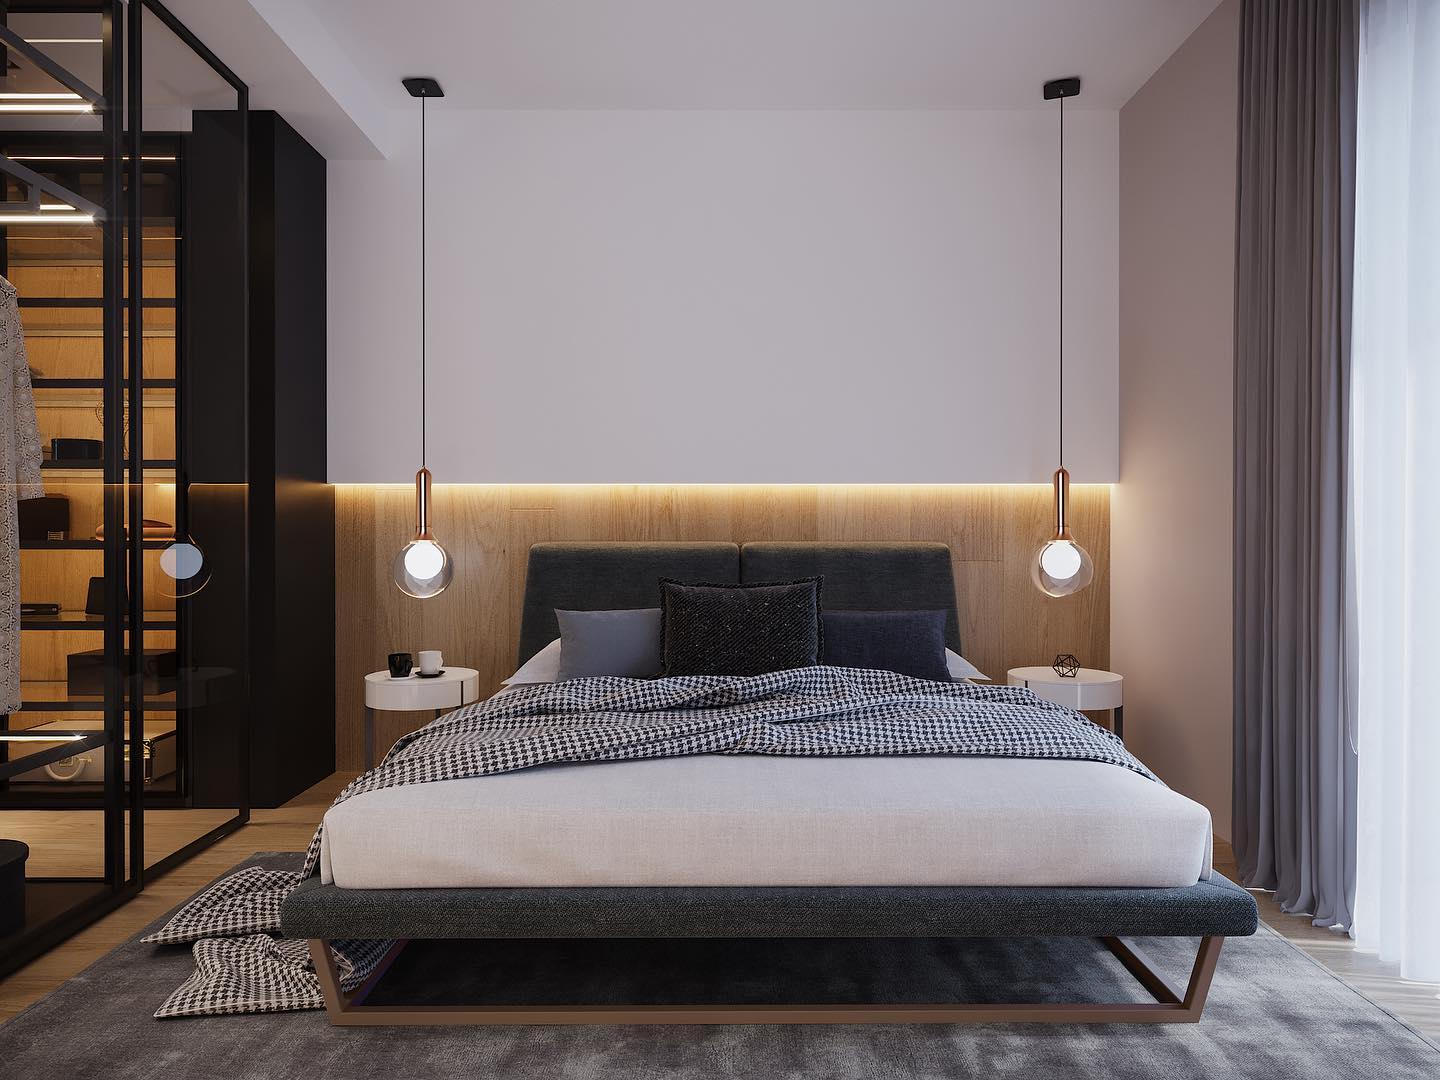 Come illuminare la camera da letto, 6 idee per renderla